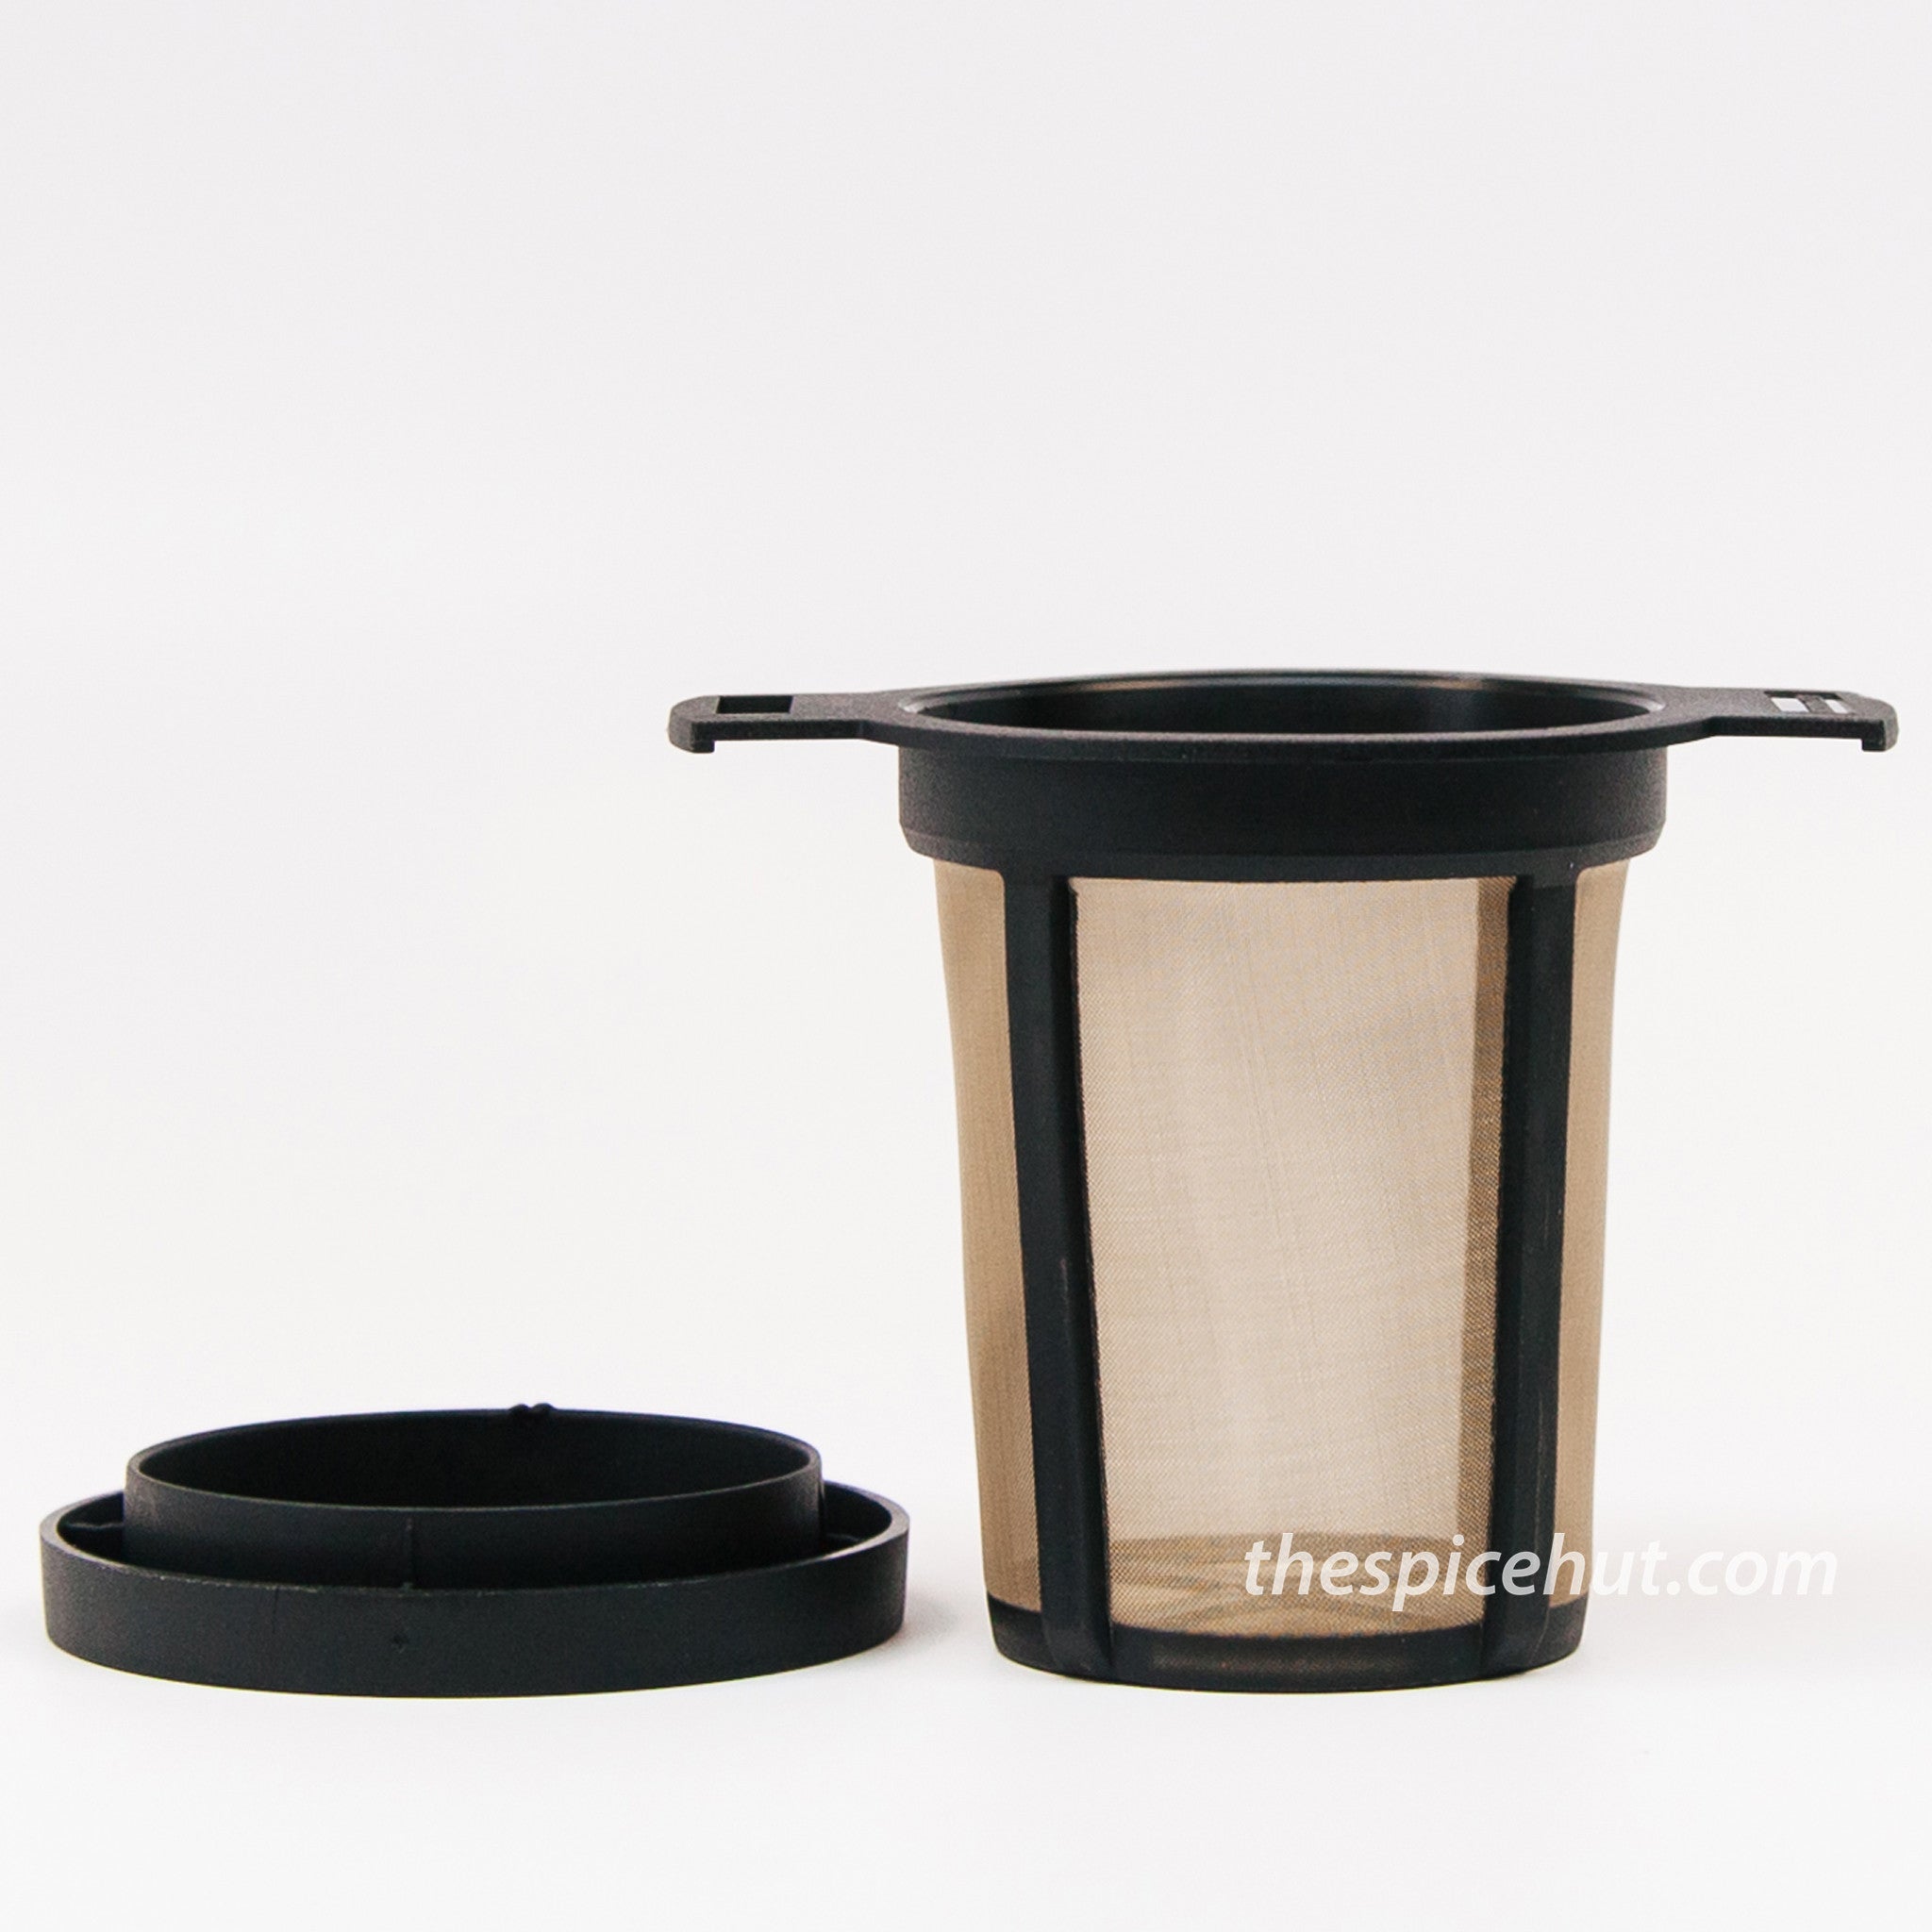 Tea Filter Basket